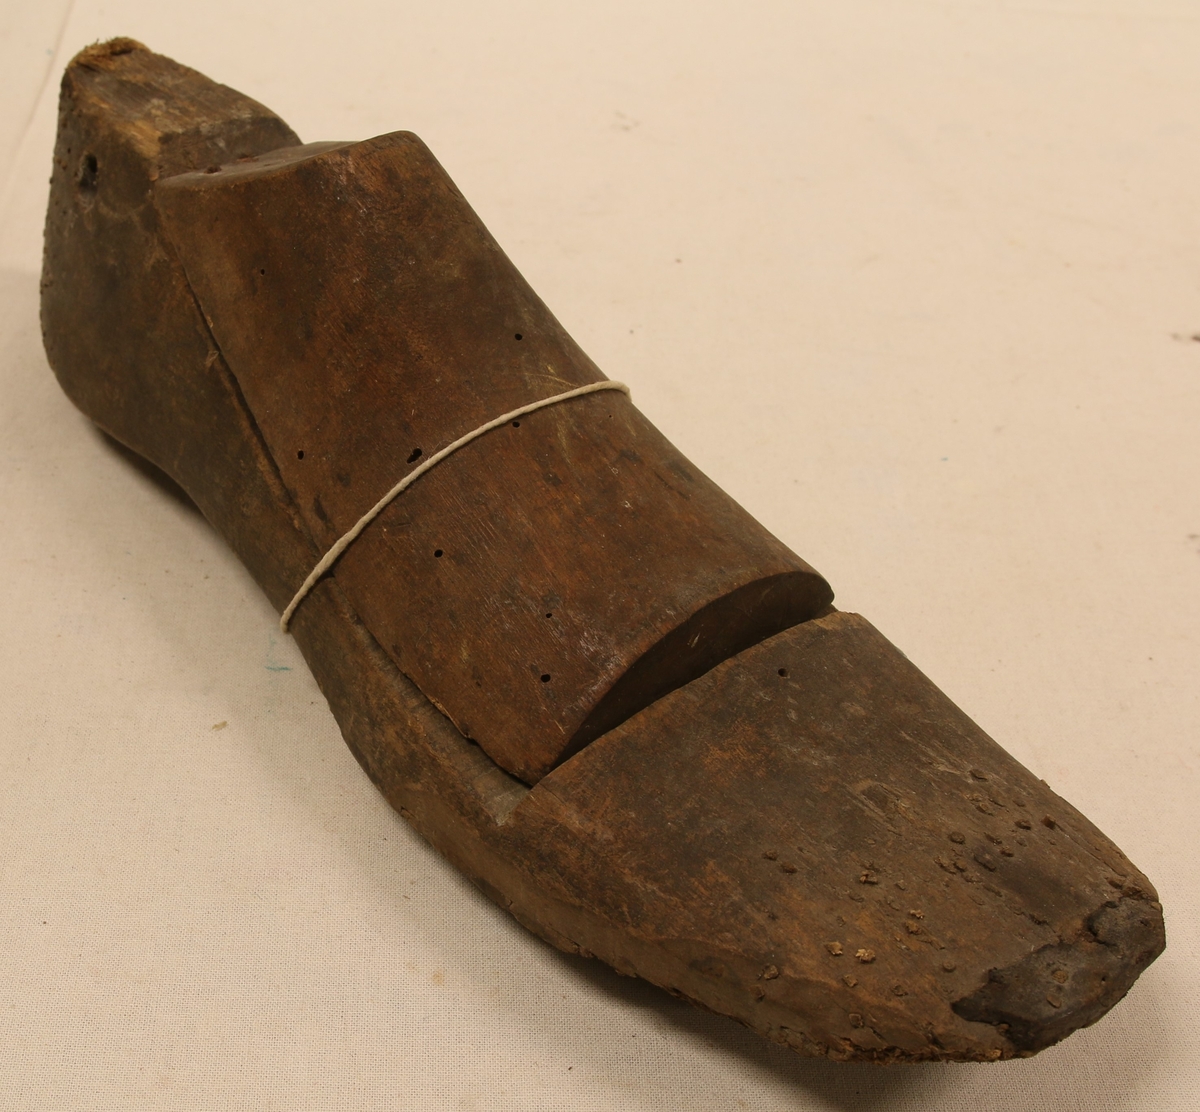 En trekasse (Li-1581C) med div. skoleister etc. Sørlands Margarin A/S, Kristiansand. Skoleisten ble brukt som form når skomakeren laget sko.
5 stk enkle tre-skomakerleister, en lang treform til langstøvler; et par skomakerleister, 2 trepinner (Li-1581D,E), 1 tresømmerker (Li-1581F), 1 fle (Li-1581I), 2 metallesker med (insulating tape) (Li-1581G,H), 1 spaser-stokk. Dette ligger i en trekasse (Sørlands margarin A/S, Kristiansand)(Li-1581C)
Tidl. merket nr 94A og B
Skomakerleist tre. (Li-0094A,B) Form som en fot.
2 deler, der resten er egen del (B). Hull gjennom hælen, små nagler i tåa, lær ytterst.
A: Mål L: 28 cm, B: 8,8 cm, H: 7 cm, B: Mål:l: 14 cm, B: 7,5 cm
Giver: Elias L Stedjedalen
Tidl merket nr 97
Skomakerleist tre, lær. (Li-0097) De to delene er skrudd fast. Form som en fot. Lær naglet utenpå flere steder.Mål: L: 29 cm, B: 8,5 cm, H: 9,5 cm
23.7.1971 - Giver Borghild Roland
Tidl merket 133
Skomakerleist tre. 2 deler; (Li-0133) festet i hverandre med spiker og skrue. Overdelen likevel nesten løs. Form som en fot. Stykke av under hælen. Gjennom et hull i hælen er bundet en lærreim. Mål: L: 26 cm, B: 9 cm, H. 9,4 cm. Giver: Solveig Johannesen.
Tidl. merket 134
Skomakerleist, tre, en del. Formet som en fot. Stykke avslått rund ogla. Lerreim fastspikra i hælen:
Mål: L: 23,5 cm, B: 7,5 cm, H: 4,5 cm
Giver: Solveig Johannesen
Tidl merket nr 781
En treform til langstøvel
Mål: l. 40,5 cm, B: 9,5 cm
Gitt 23.10.1992 Reidar Eeg
Tidl merket nr 98
1 stk - en del skomakerleist - tre formet som en fot, med et hull bak i hælen. M¨ål: l: 29 cm, B: 8,1 cm, H: 7,4 cm
1 par står også på skomakerverksted.
Giver: Borghild Roland, 23.7.1971
Et par skomakerleist tre (Li-1581 A,B) - 2deler festet i hverandre med spiker. Overdelen likevel nesten løs. Formet som en fot. Hull ene siden rist. Gjennom et hull i hælen henger tråd. 
Mål: L: 26 cm, B: 8,5 cm, H: 6 cm
Lengde tre-pinnene 14,5 og 12,5 cm
Lengde tre-søm merker 16,5 cm
Spaser-stokk - rund
Lengde 79 cm, Dia topp: 2,5 cm